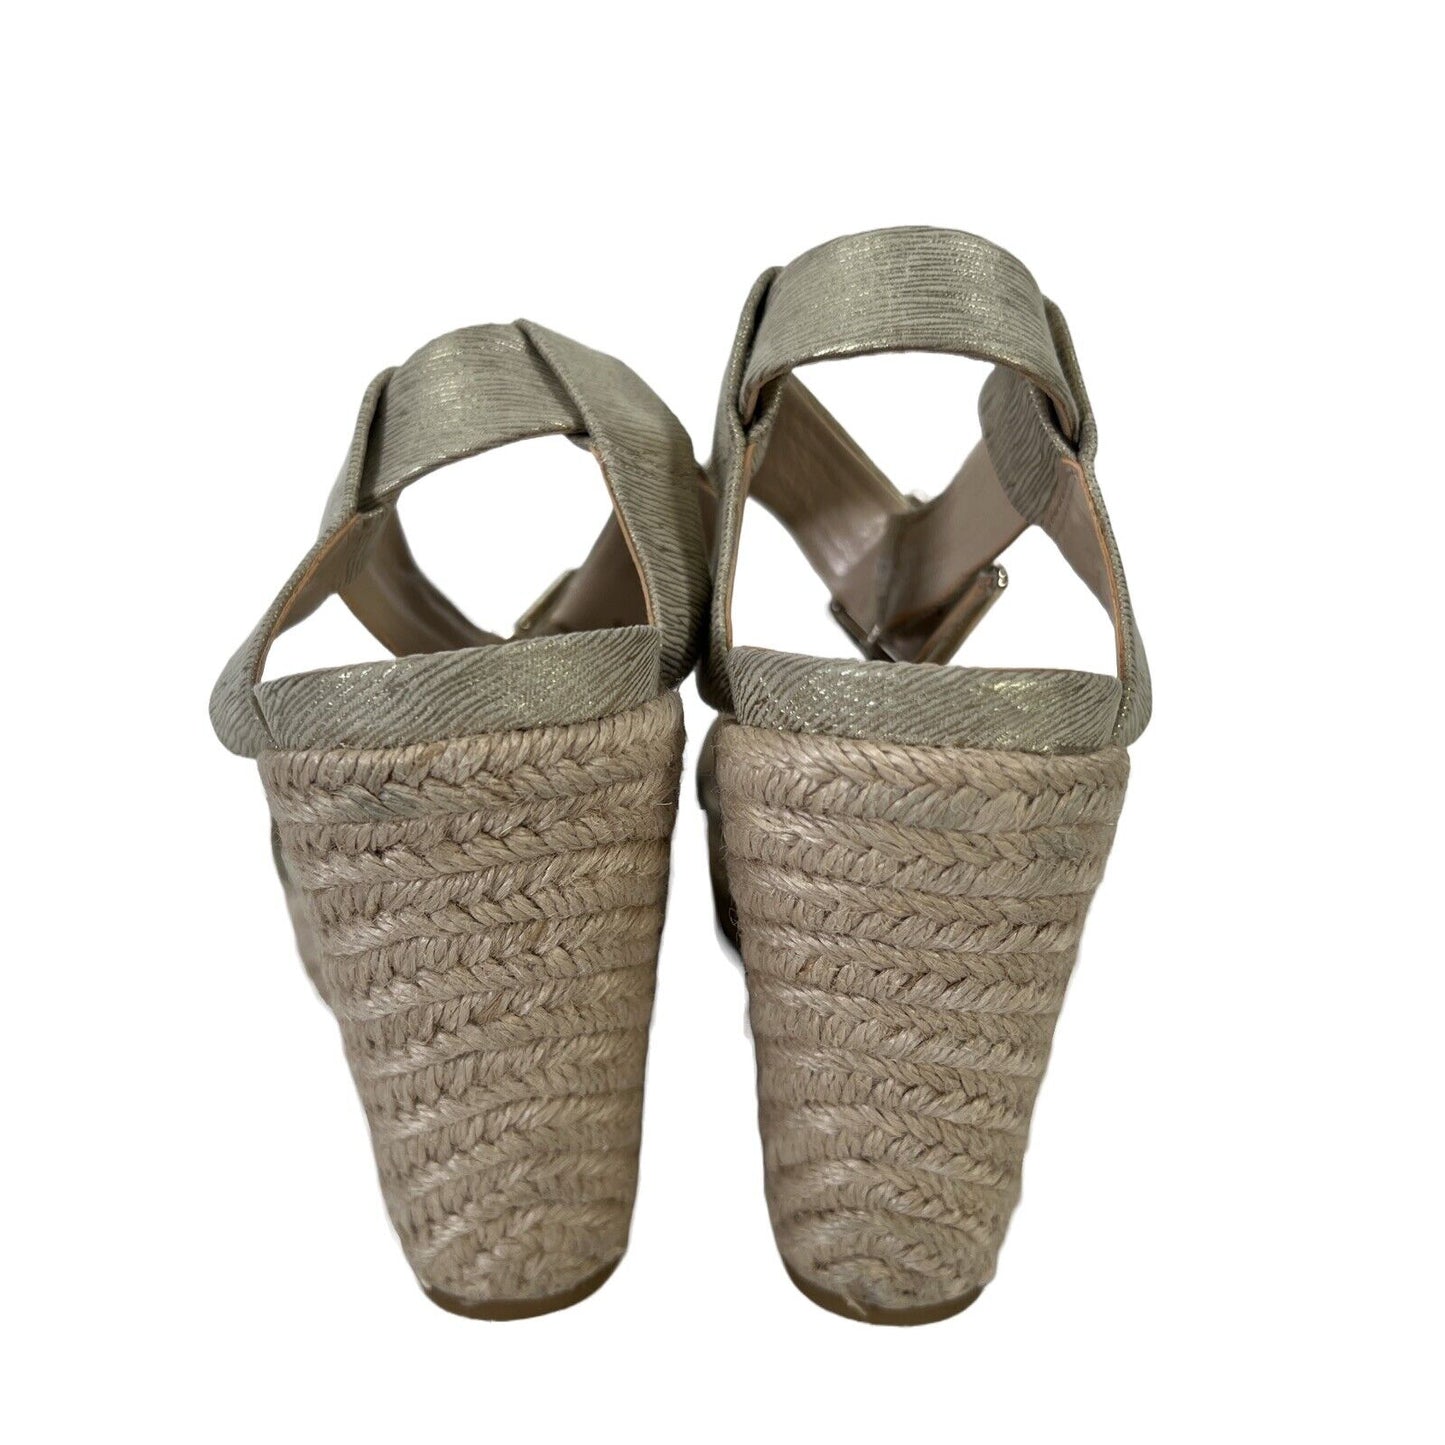 Calvin Klein Women's Beige Metallic Espadrille Wedge Sandals - 7